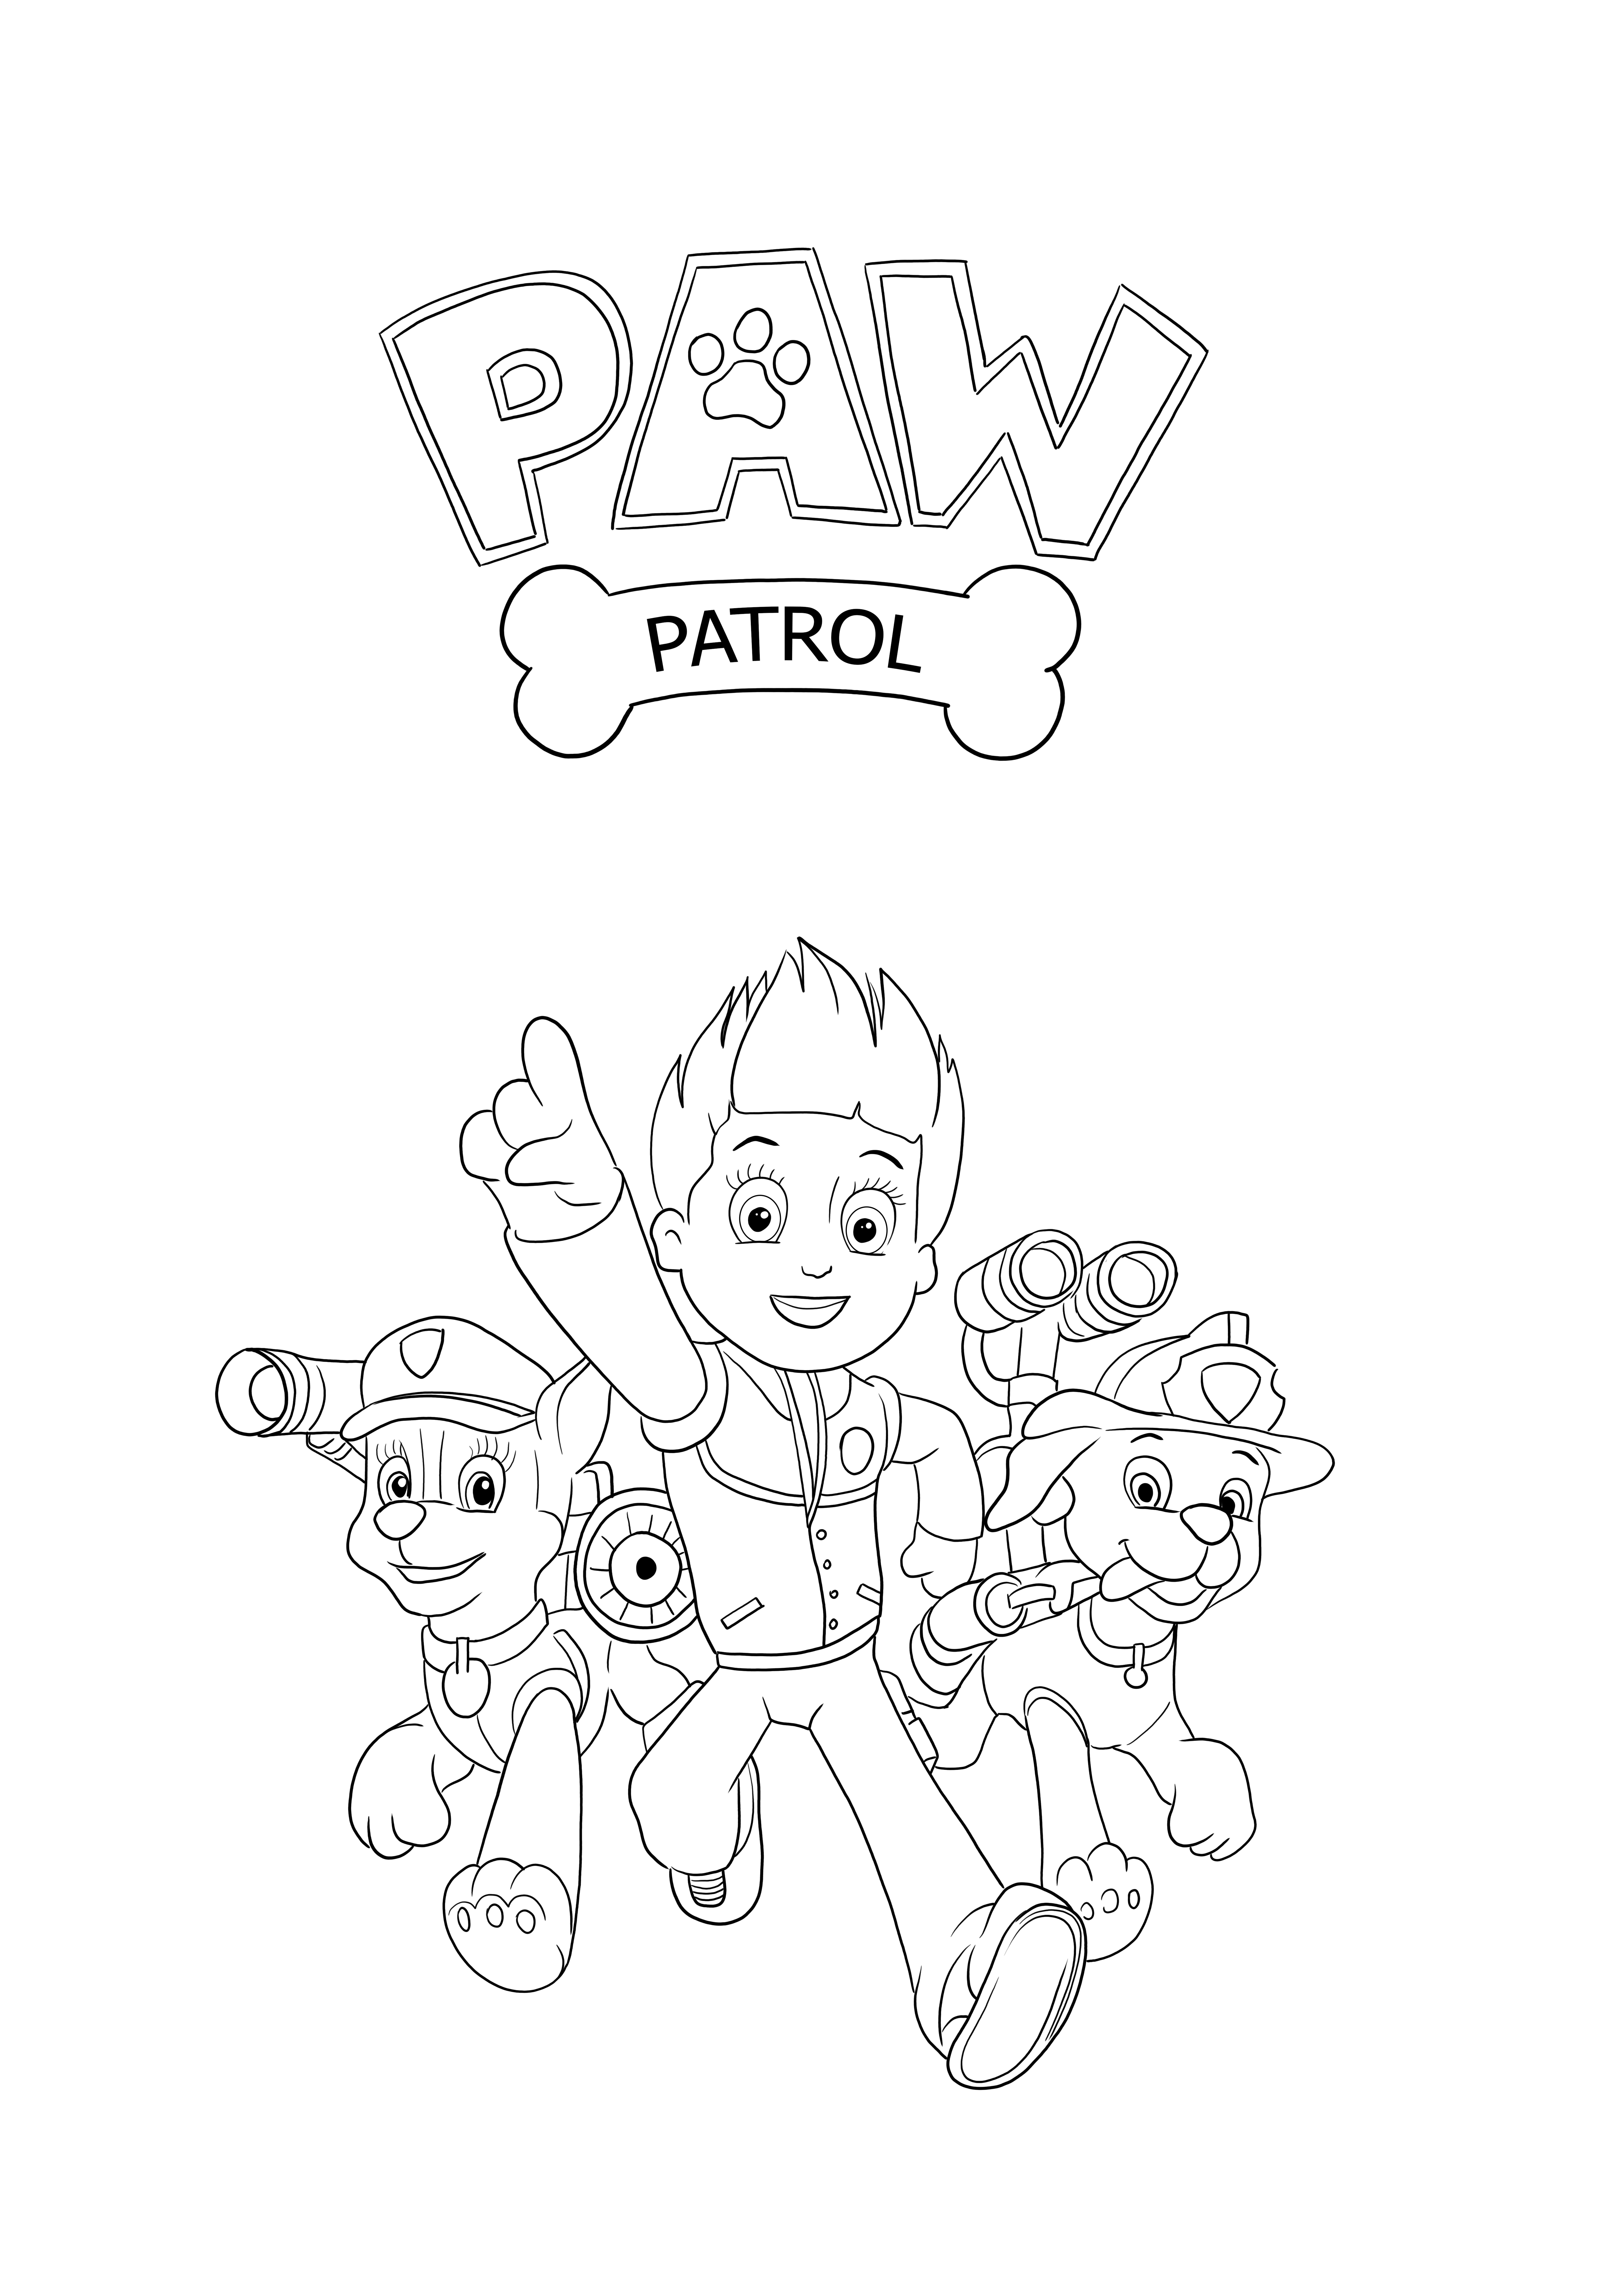 Paw Patrol ekibi basit boyama için ücretsiz yazdırılabilir